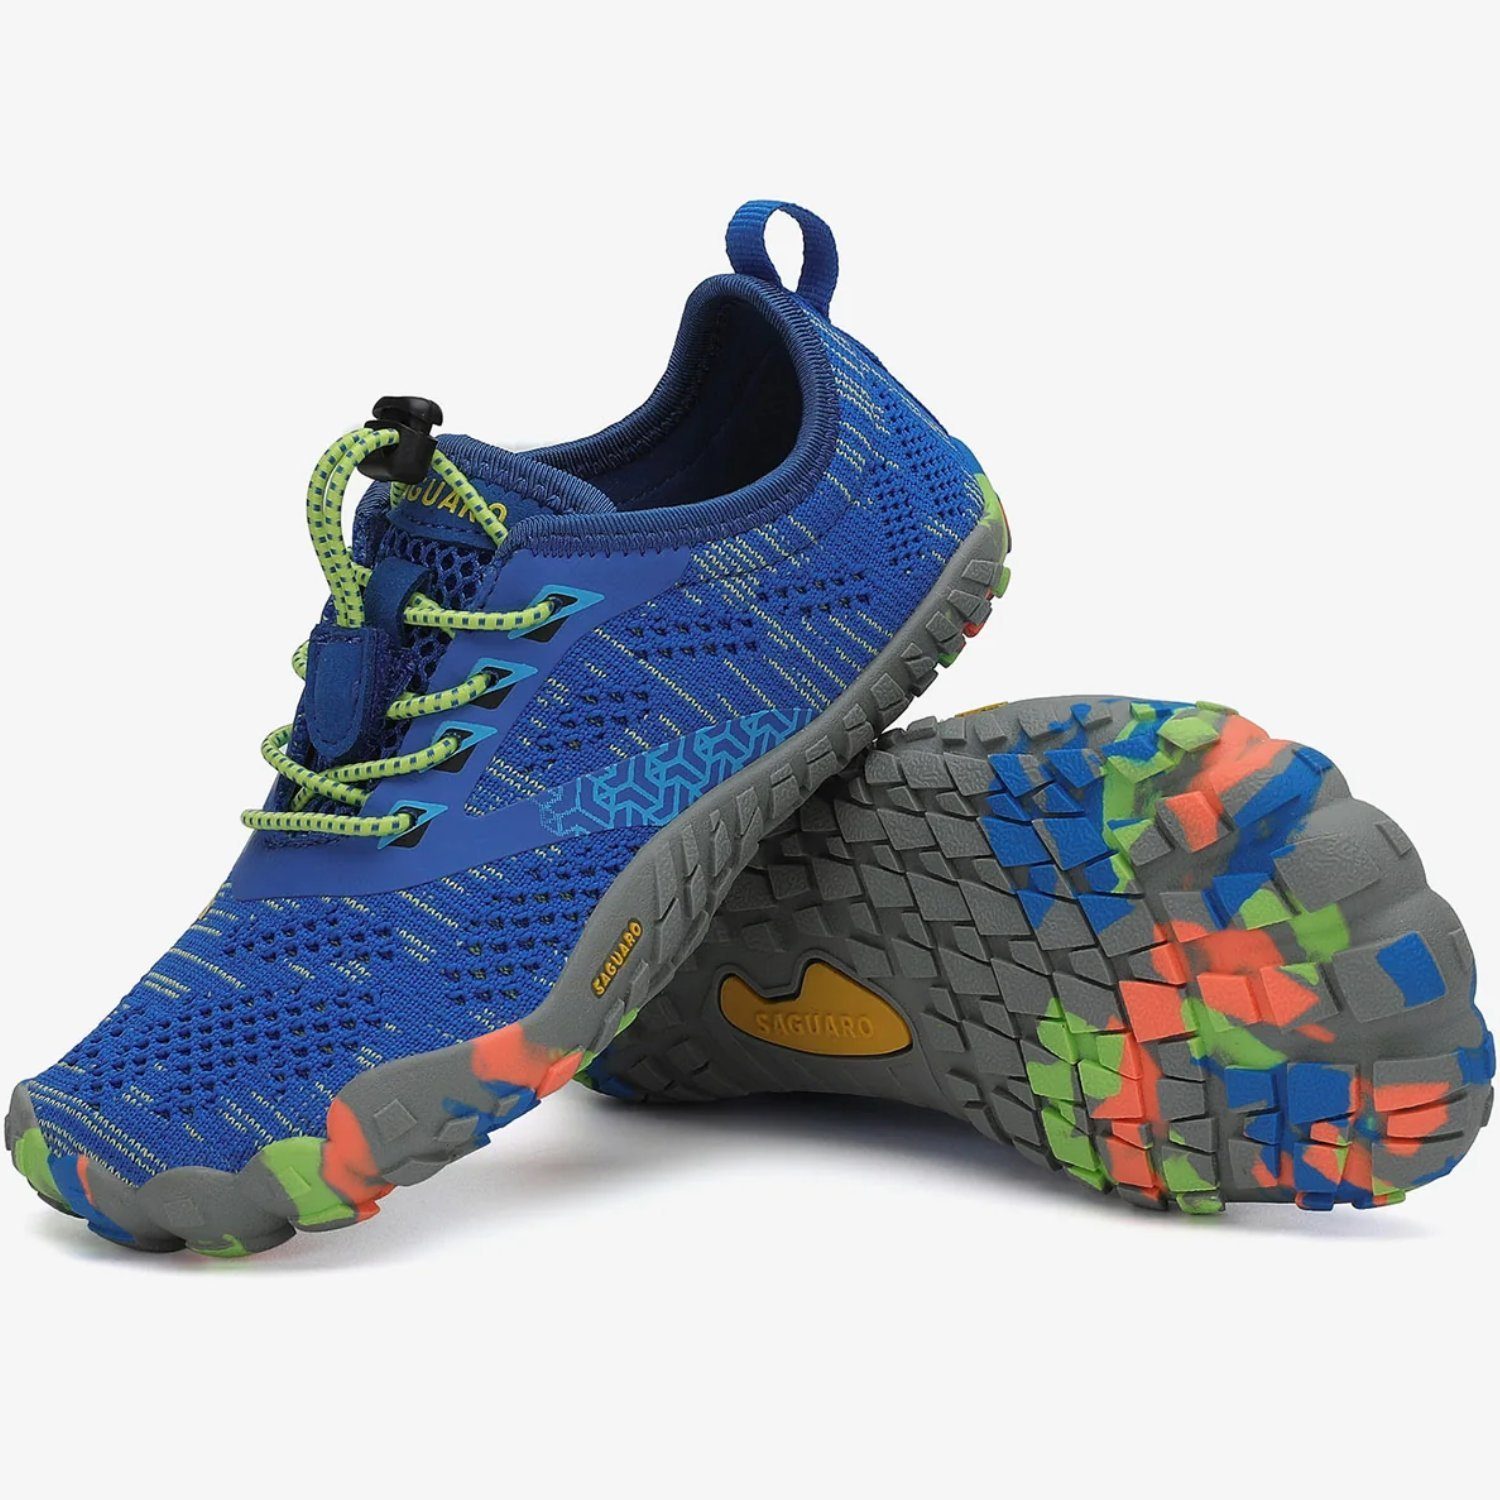 SAGUARO Barfußschuh (bequem, leicht, atmungsaktiv, rutschfest) Minimalschuhe Laufschuhe Sport-Schuhe Jogging Sneaker Trail-Running Blau 025 Kids